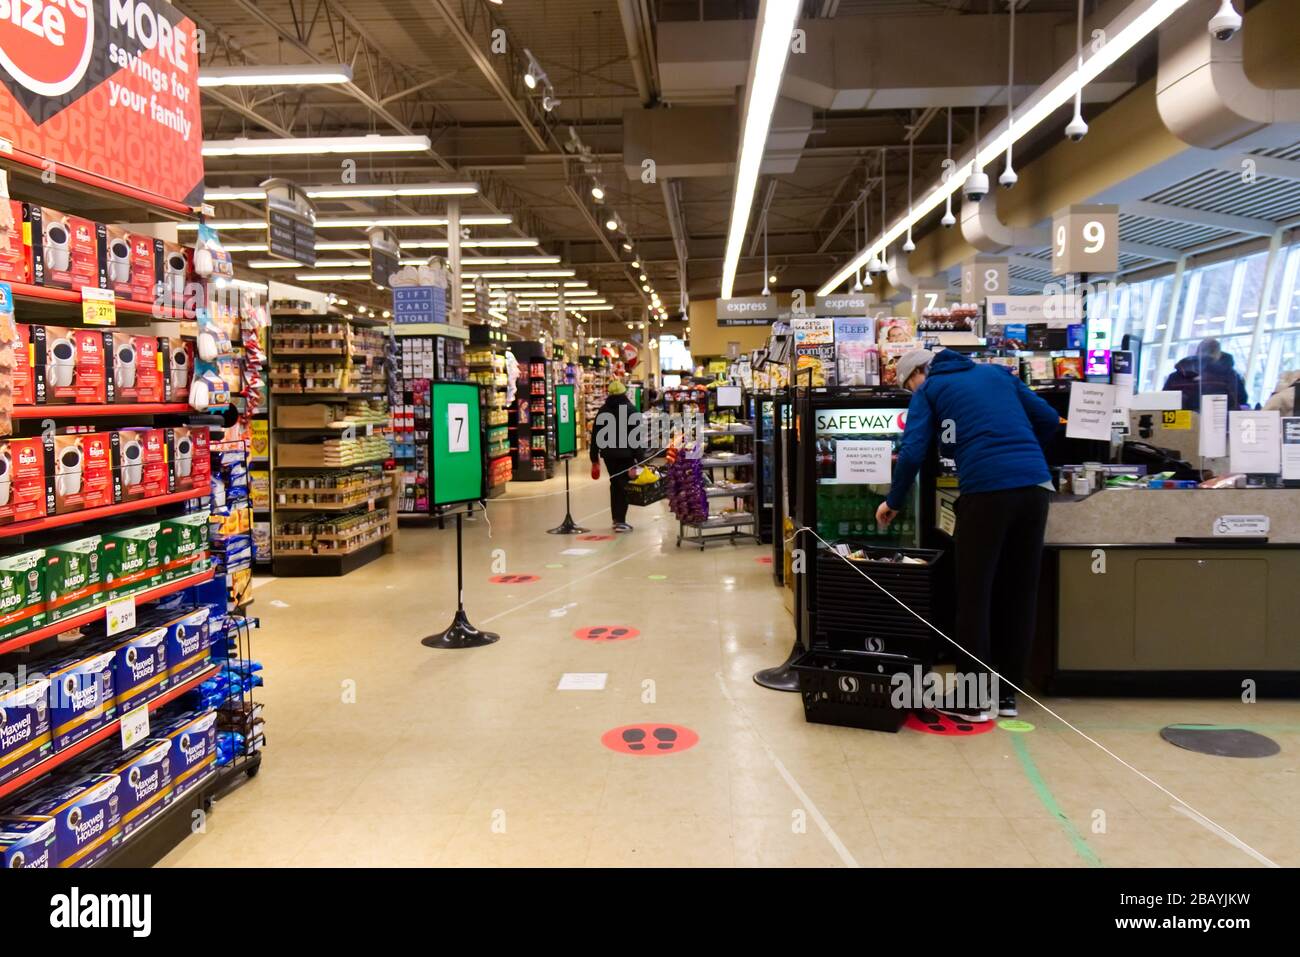 Vancouver, Kanada - 28.2020. März: Supermarkt-Verkaufsraum begrenzt die Anzahl der Kunden im Geschäft und rät ihnen, soziale Entfernungen zu halten Stockfoto